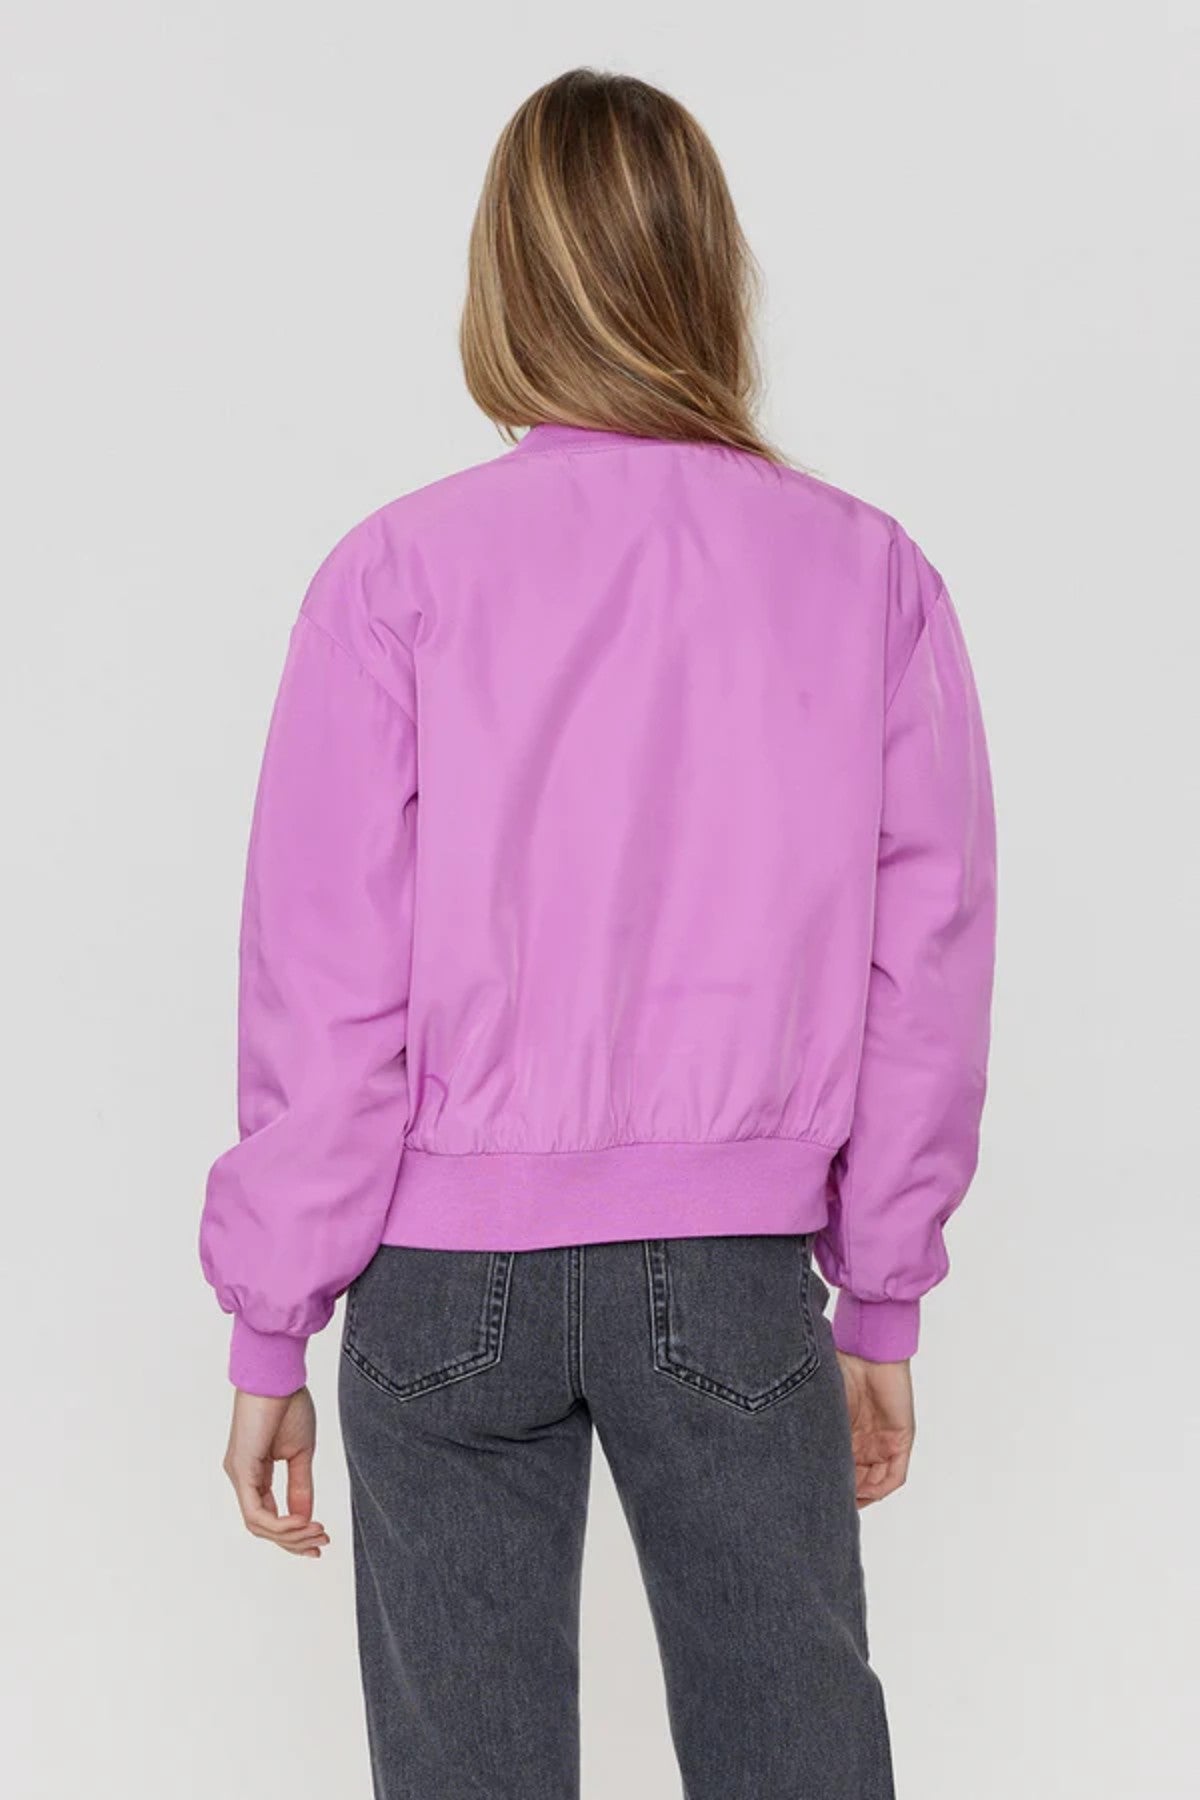 Ellinora Purple Jacket